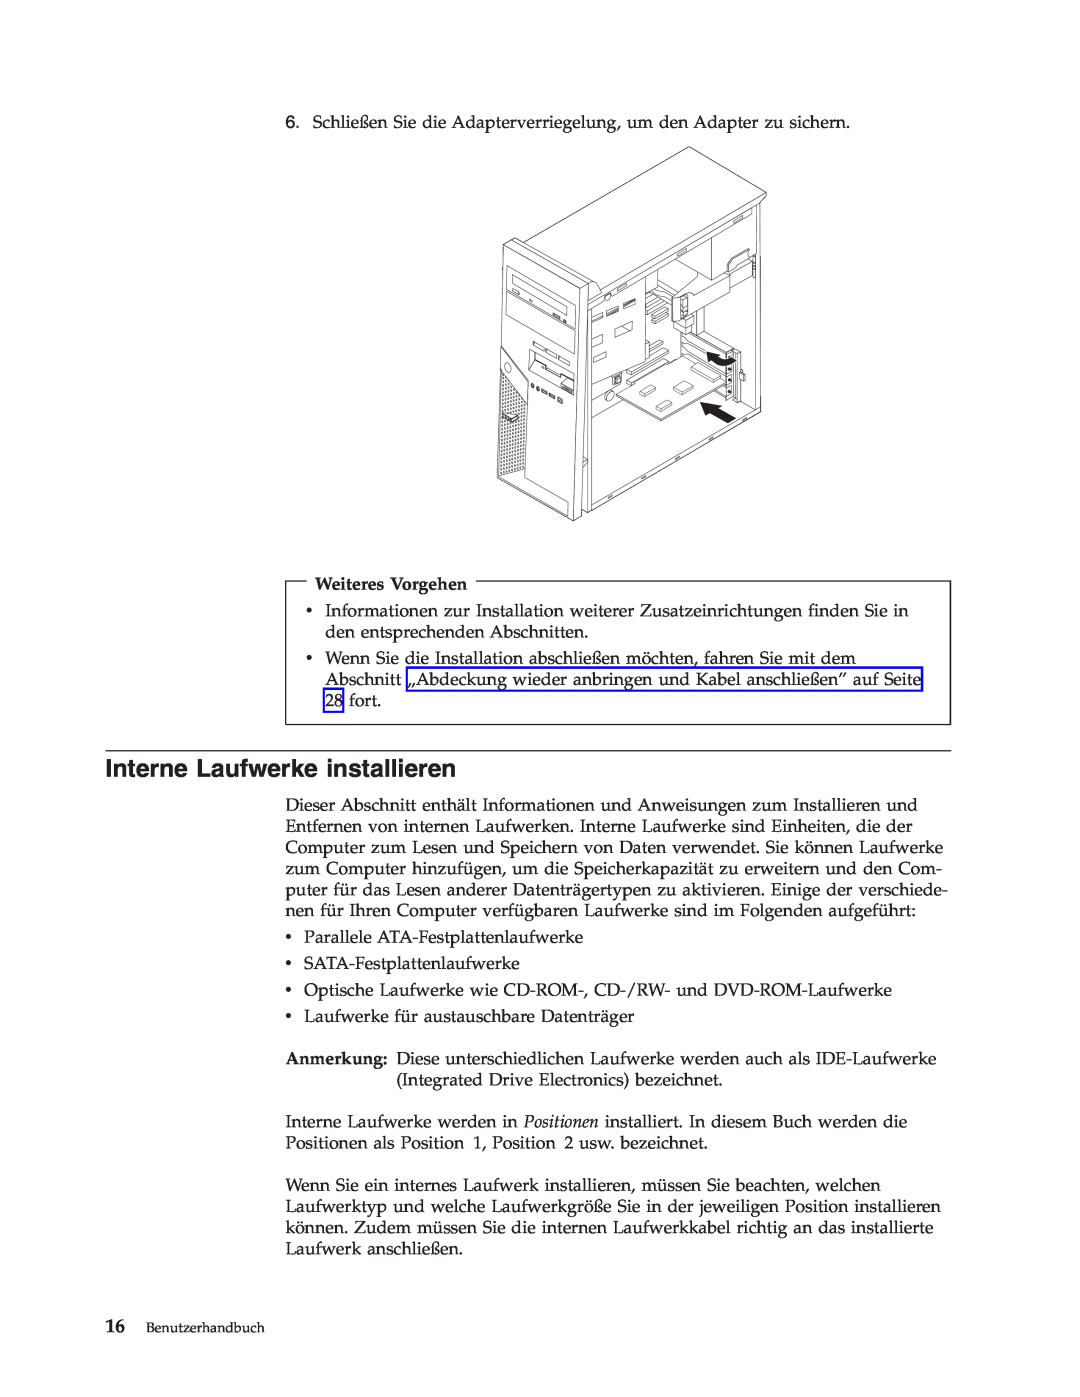 IBM 9212, 9213 manual Interne Laufwerke installieren, Weiteres Vorgehen, Benutzerhandbuch 